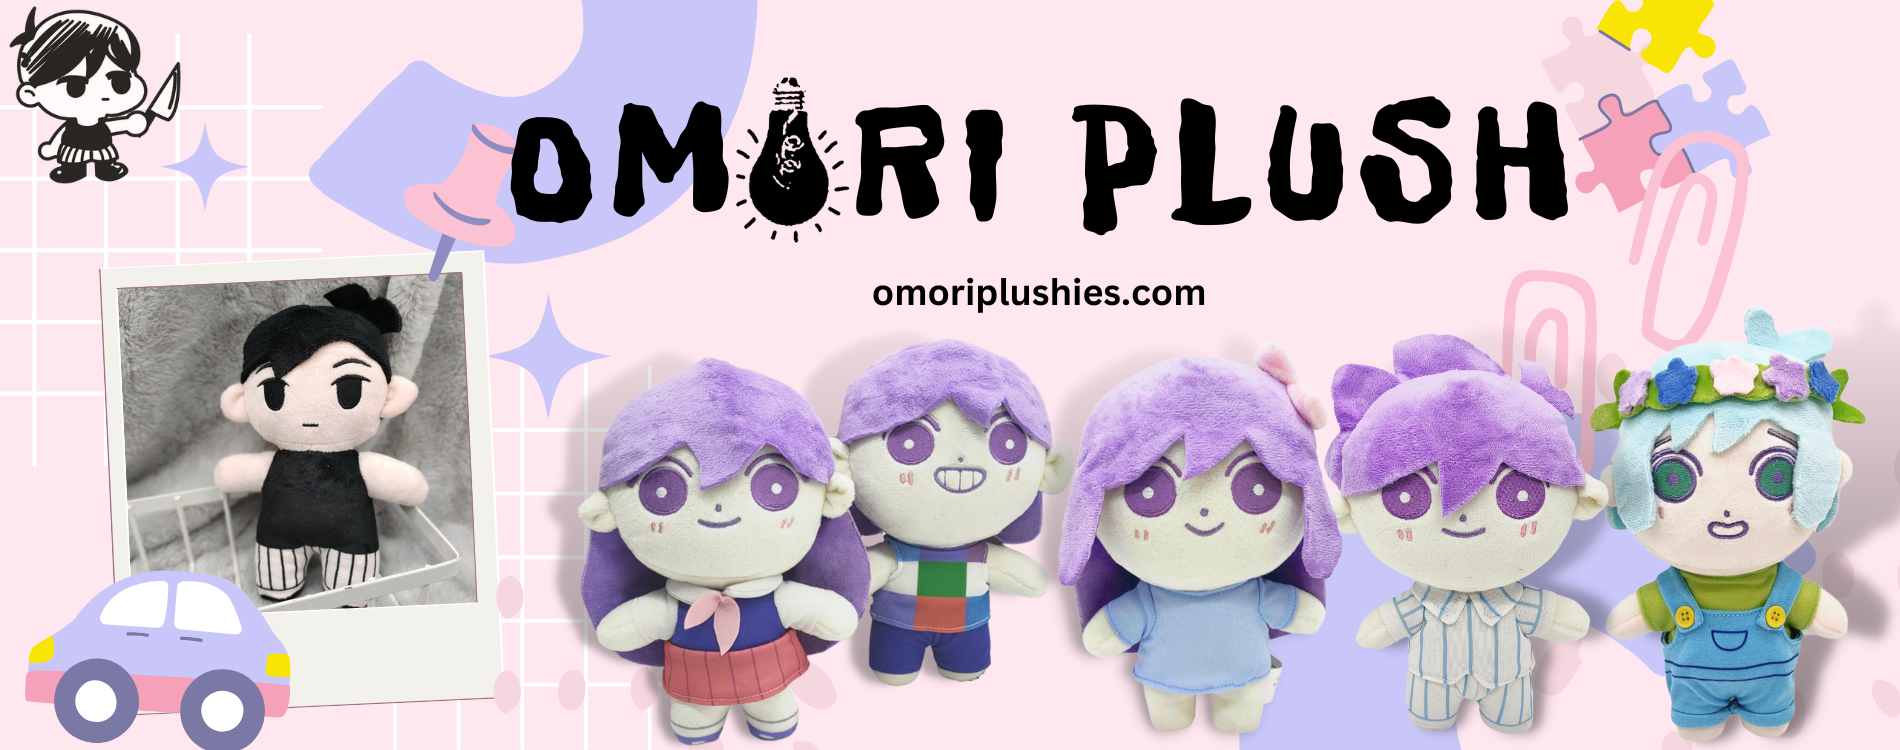 Omori Plush ⚡️ OFFICIAL Omori Stuffed Toy Store